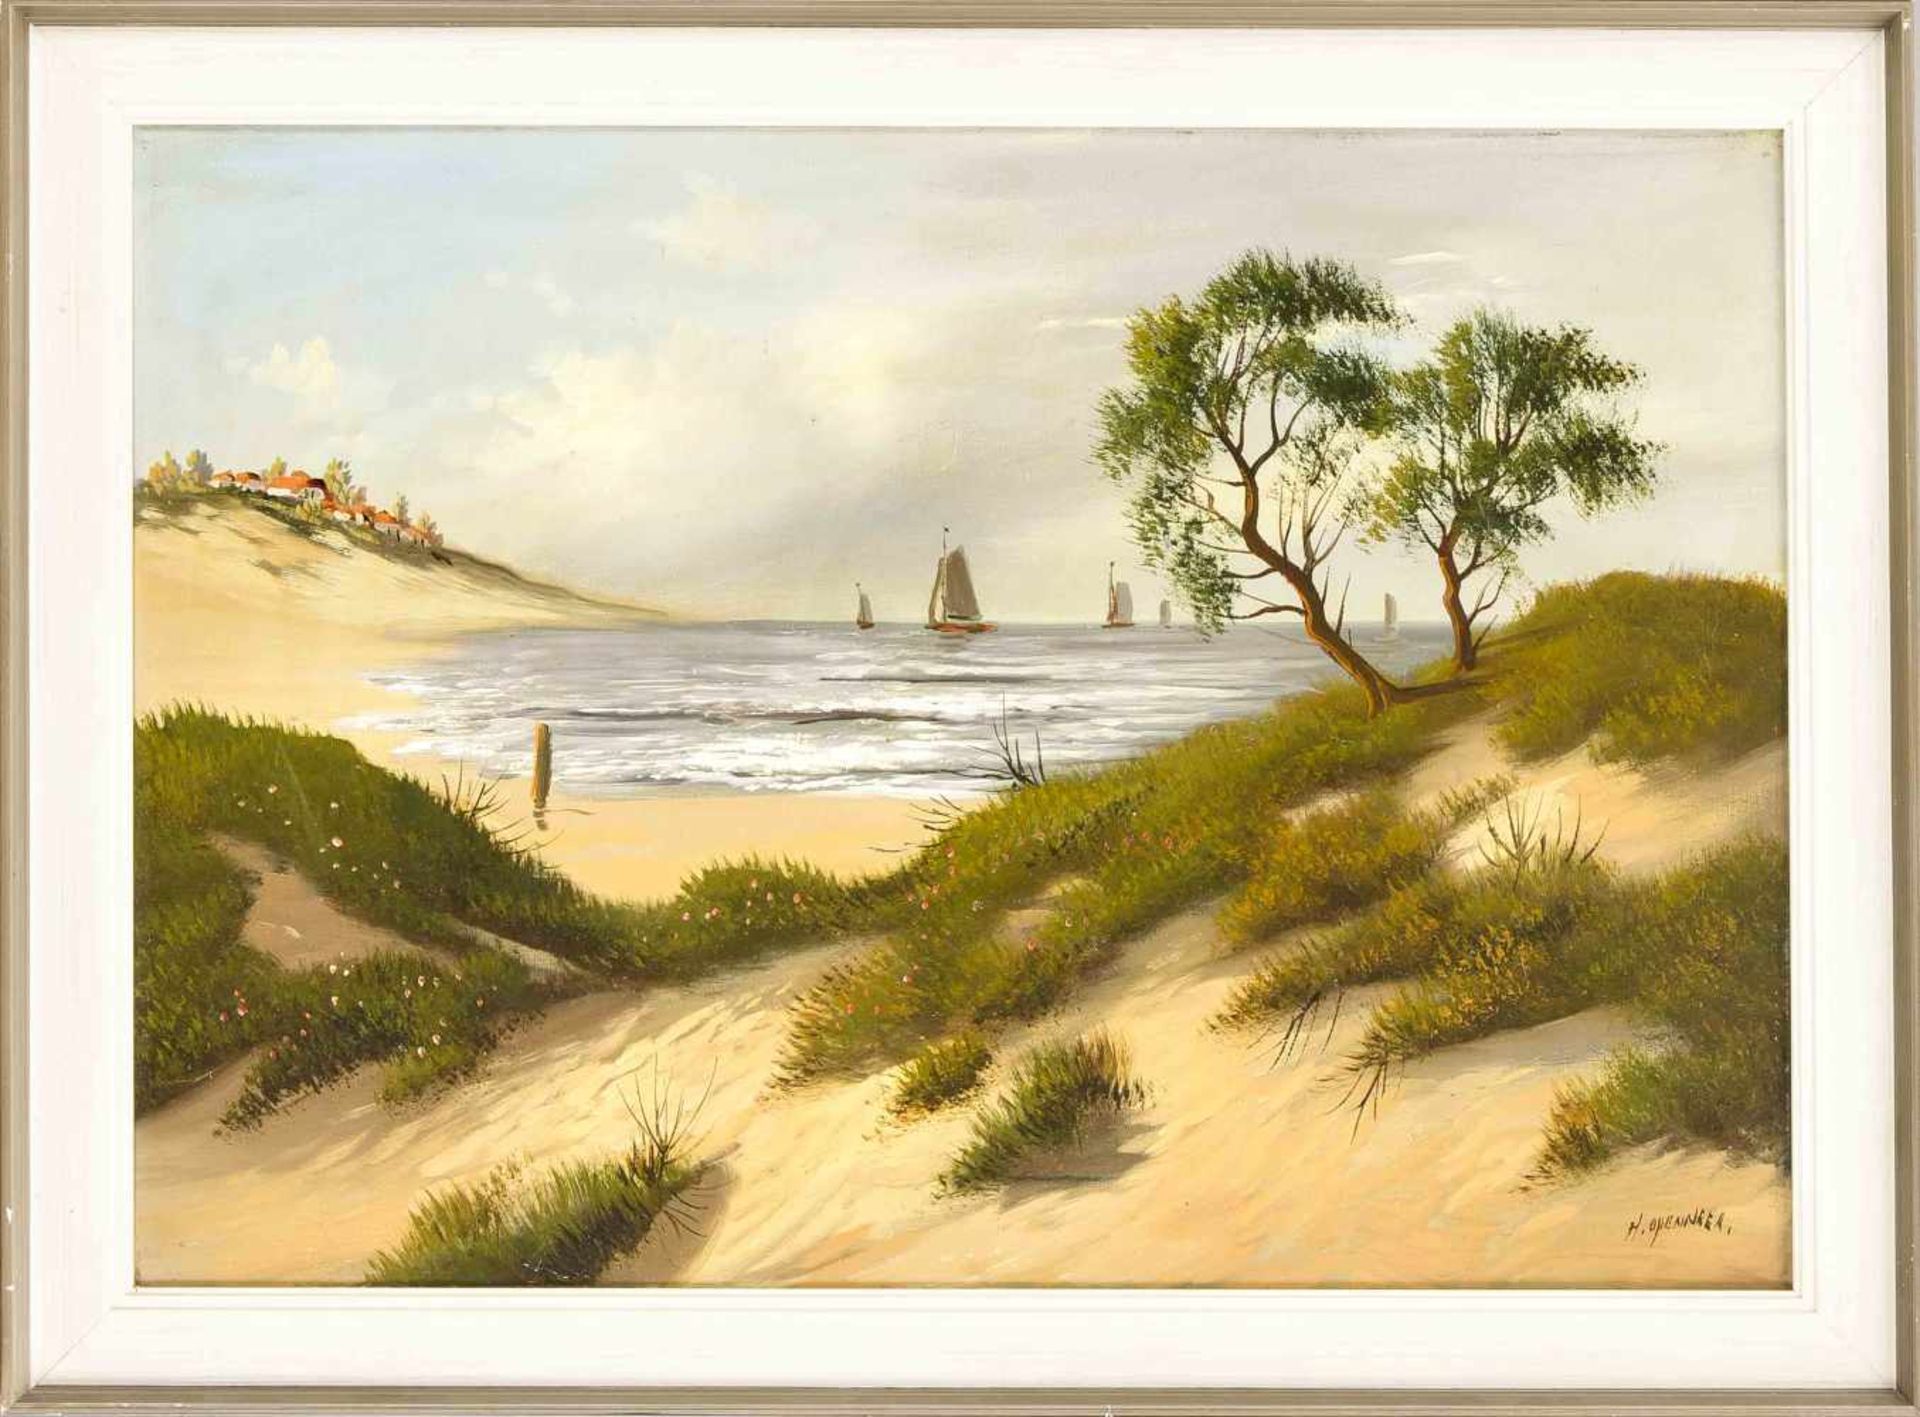 Herman Openneer (1906-1986), niederländischer Landschaftsmaler, Dünen an der Küste mitSeglern im